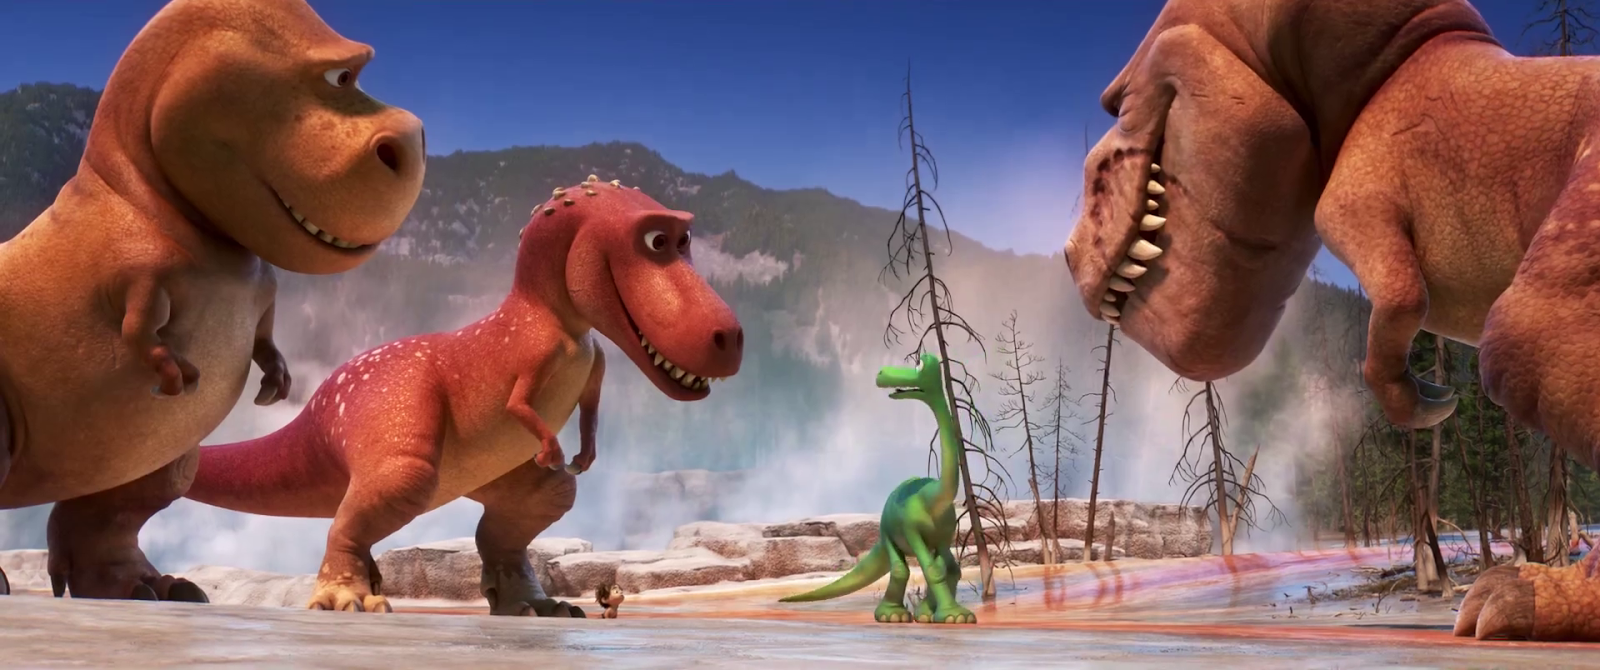 Включи потерянный динозавр. Динозавр из мультфильма. Добрый динозавр.